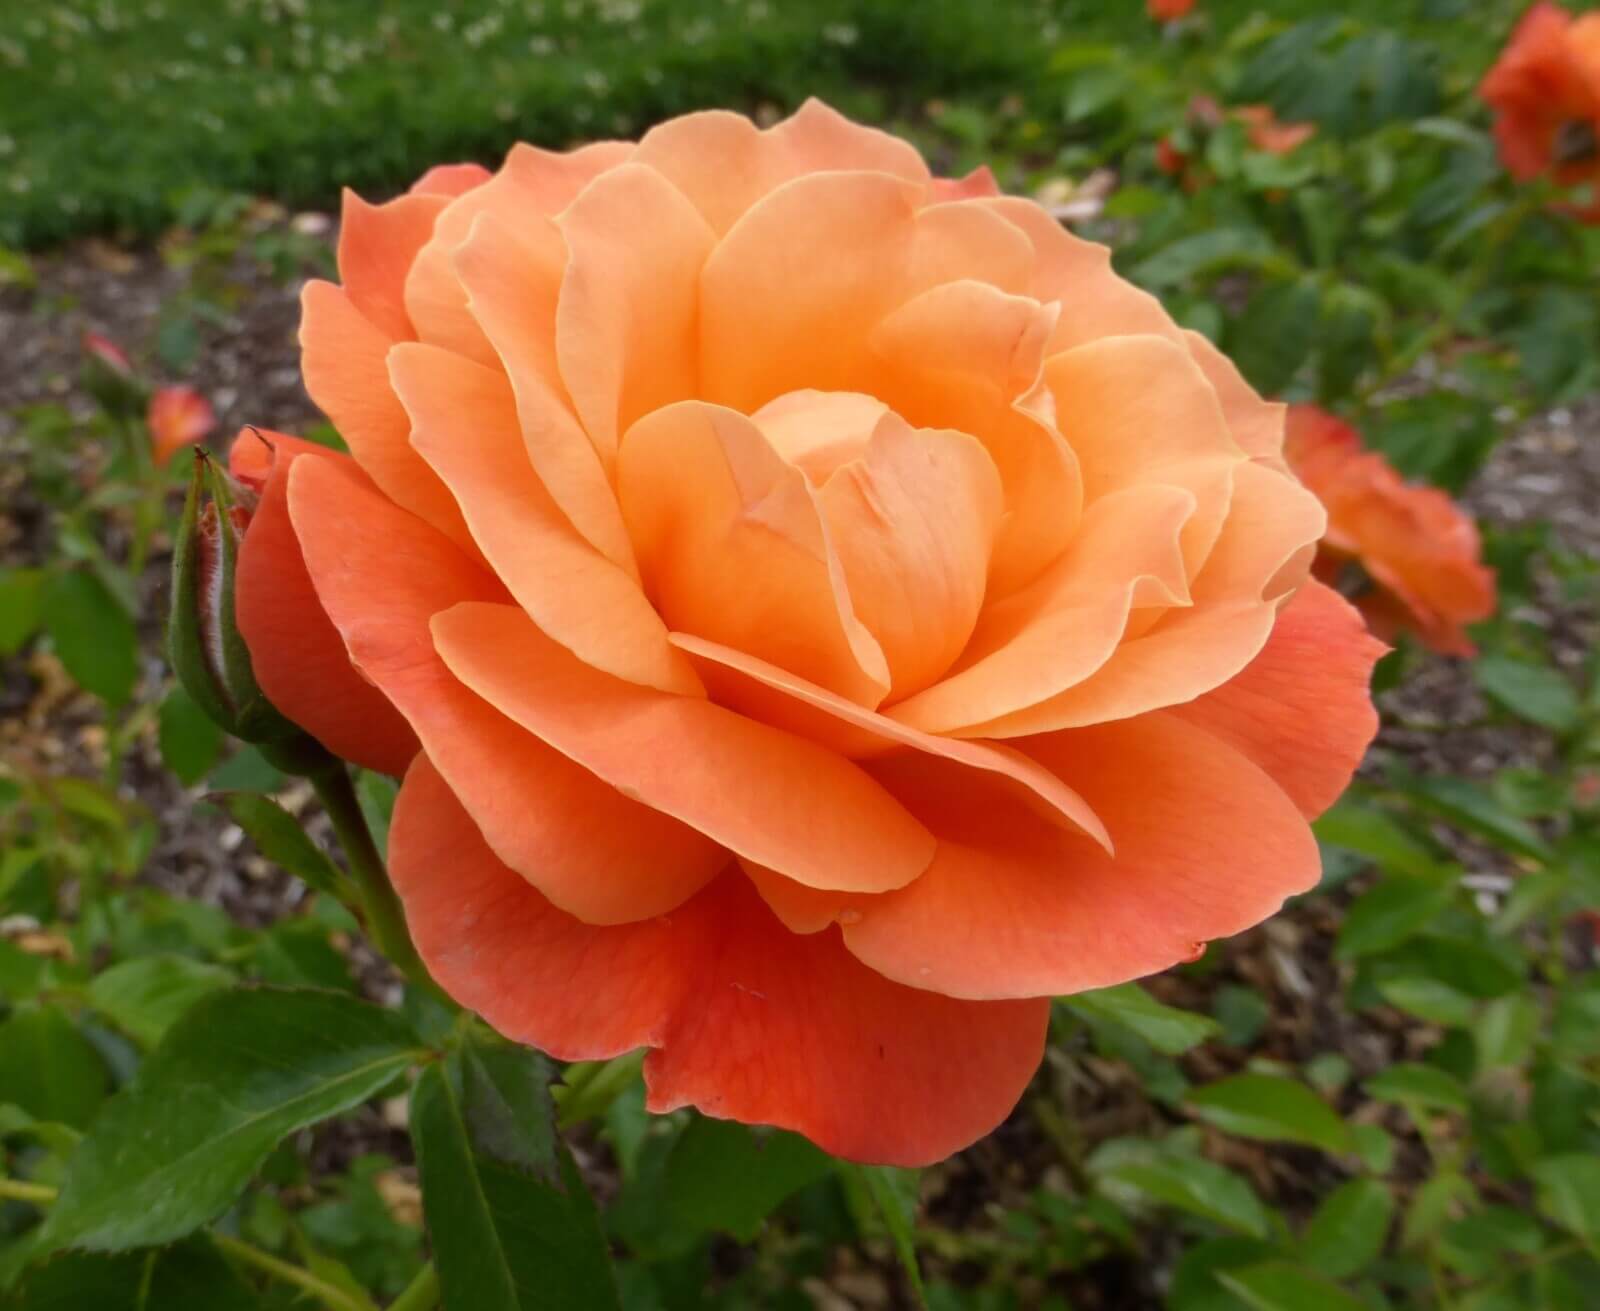 Orange rose flower delivery Grand Rapids